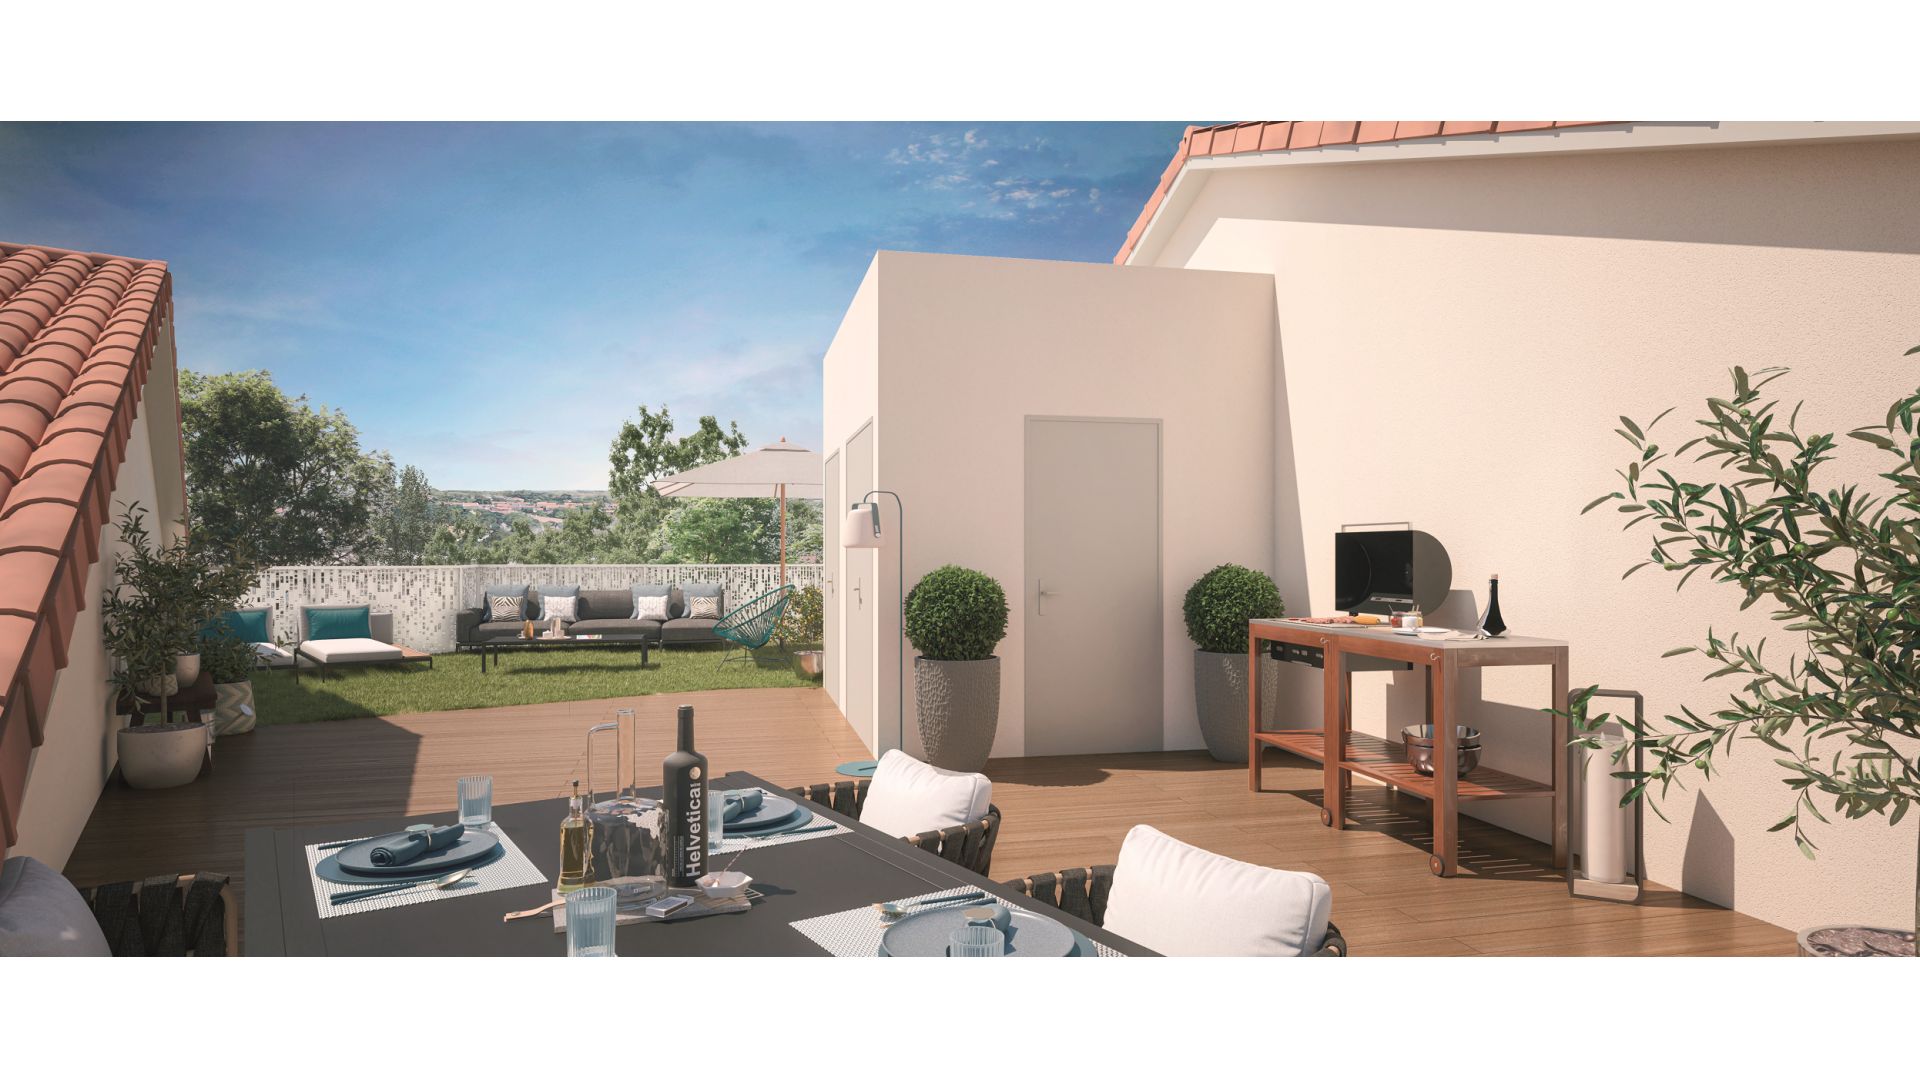 Greencity immobilier - achat appartements neufs du T2 au T5Duplex - Résidence Le Majorelle - 31240 L'Union  - vue terrasse